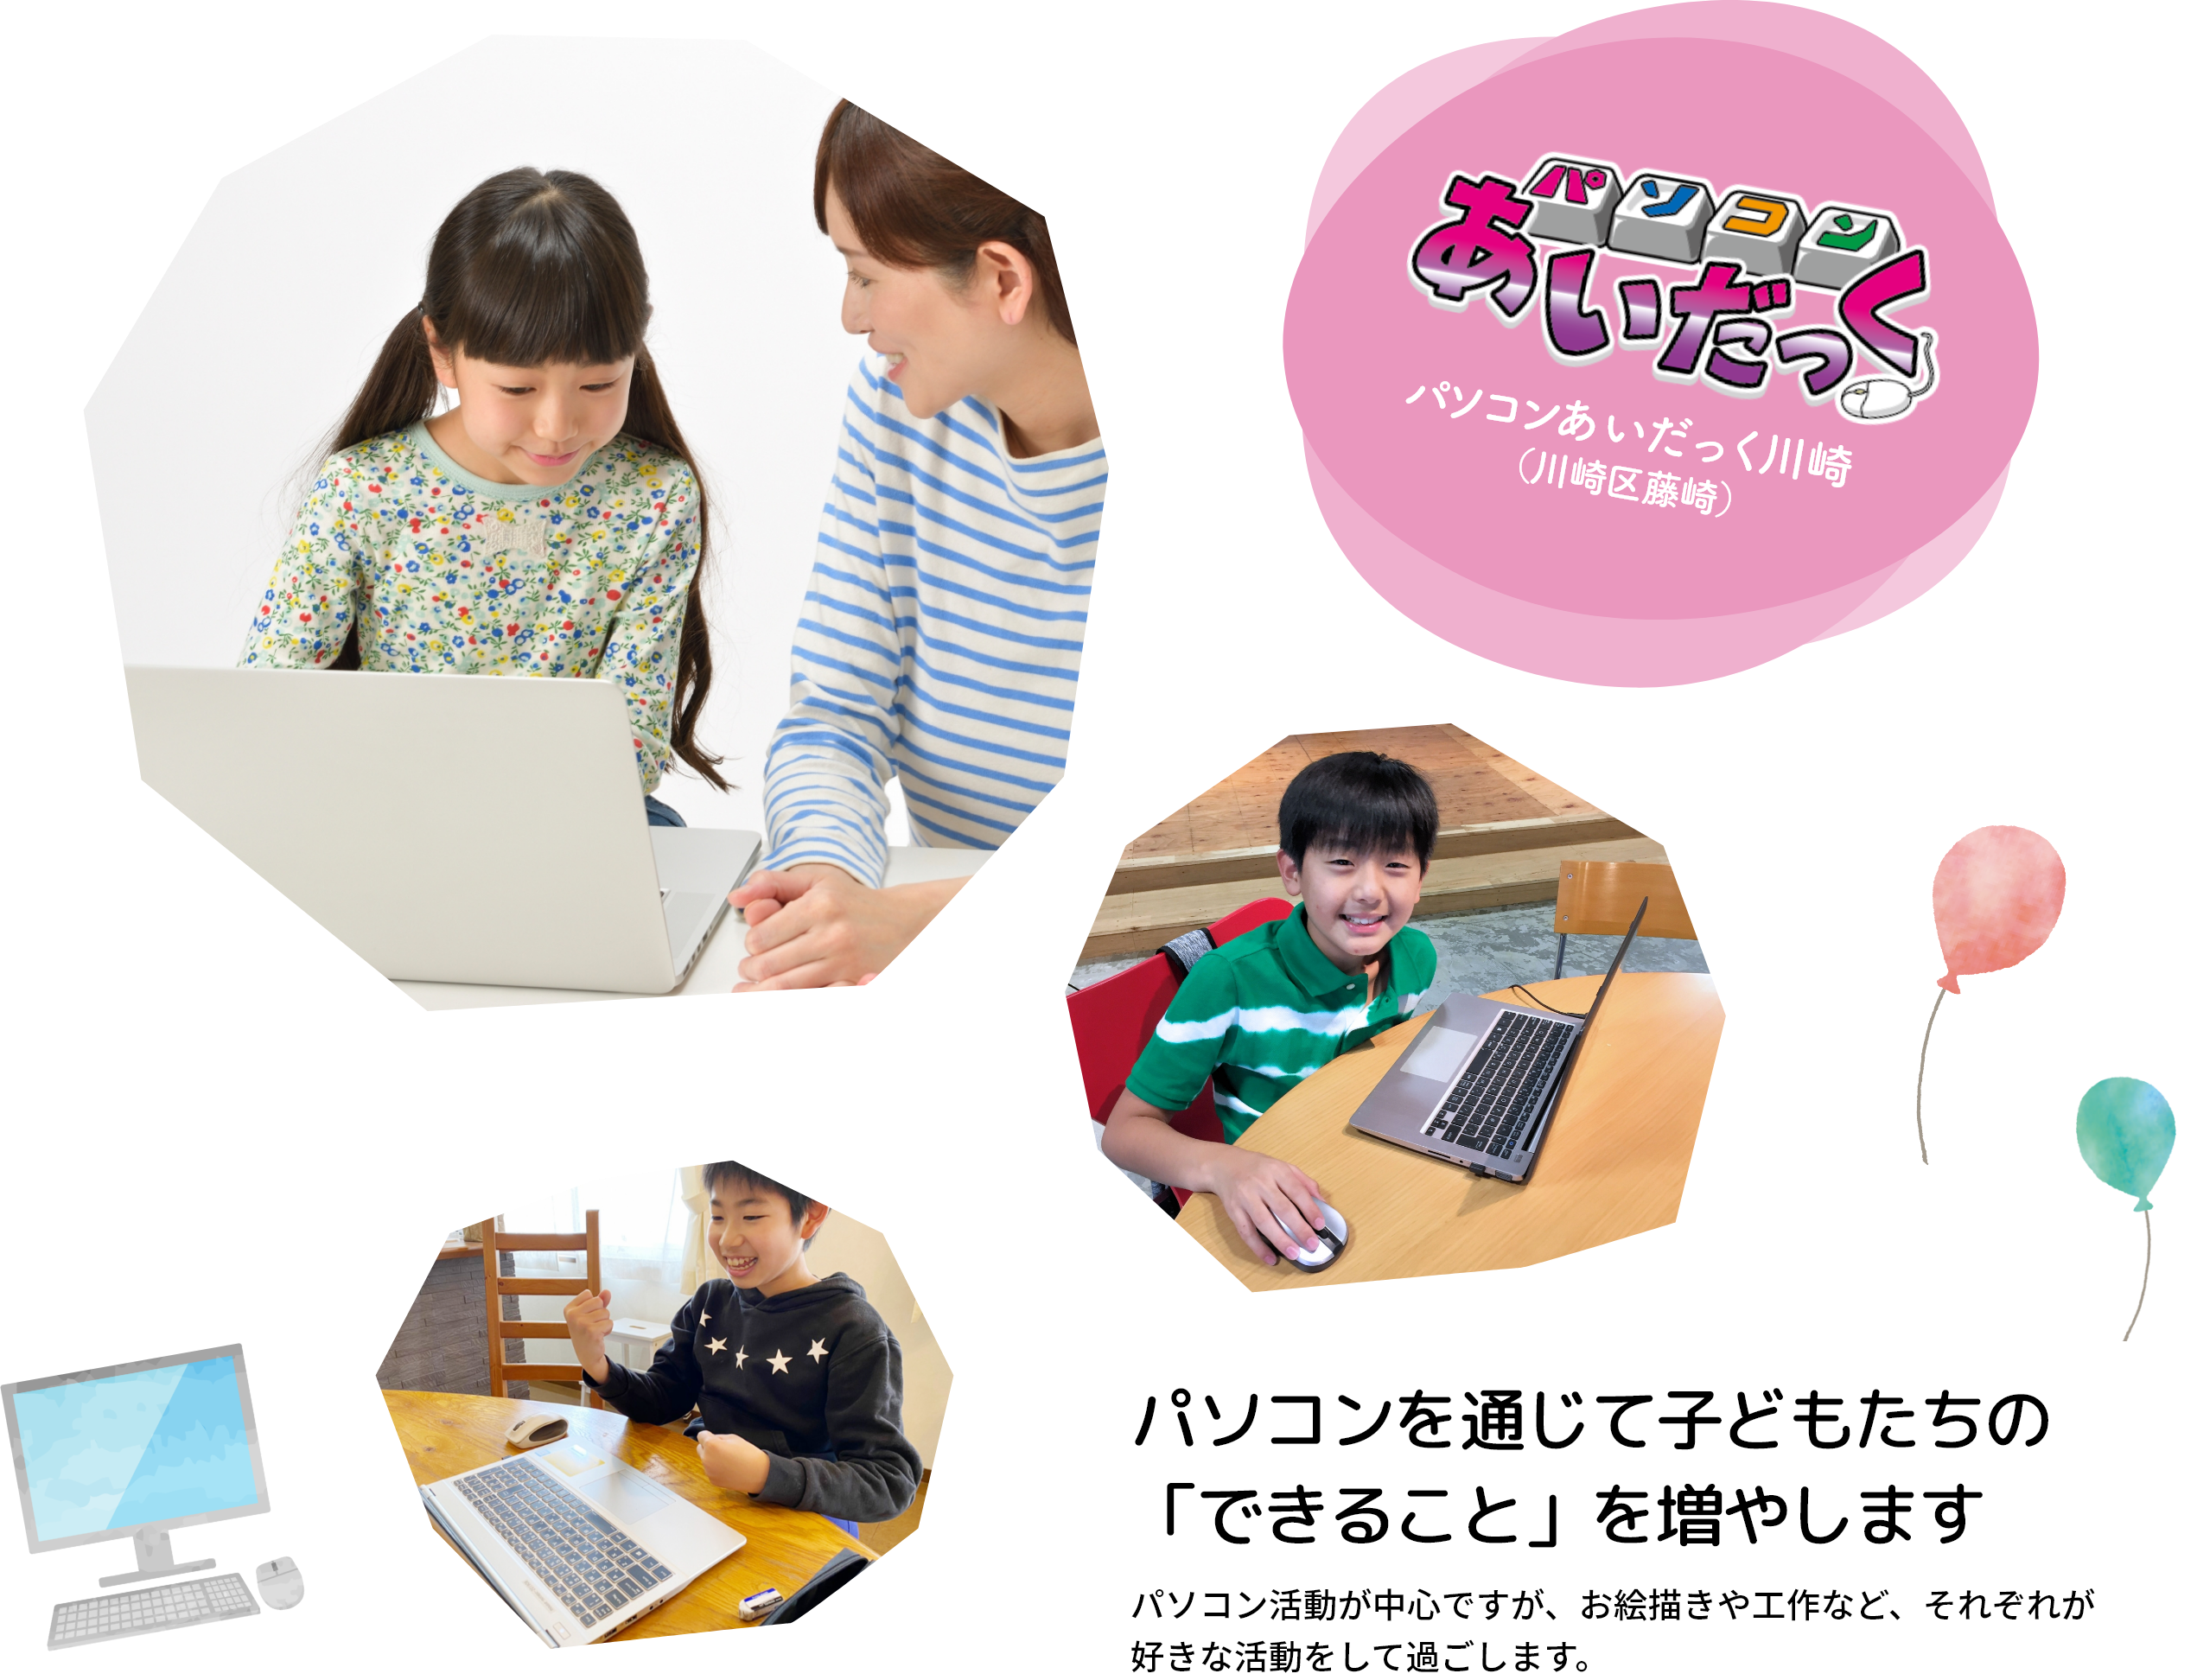 パソコンを通じて子どもたちの「できること」を増やしますパソコン活動が中心ですが、お絵描きや工作など、それぞれが好きな活動をして過ごします。